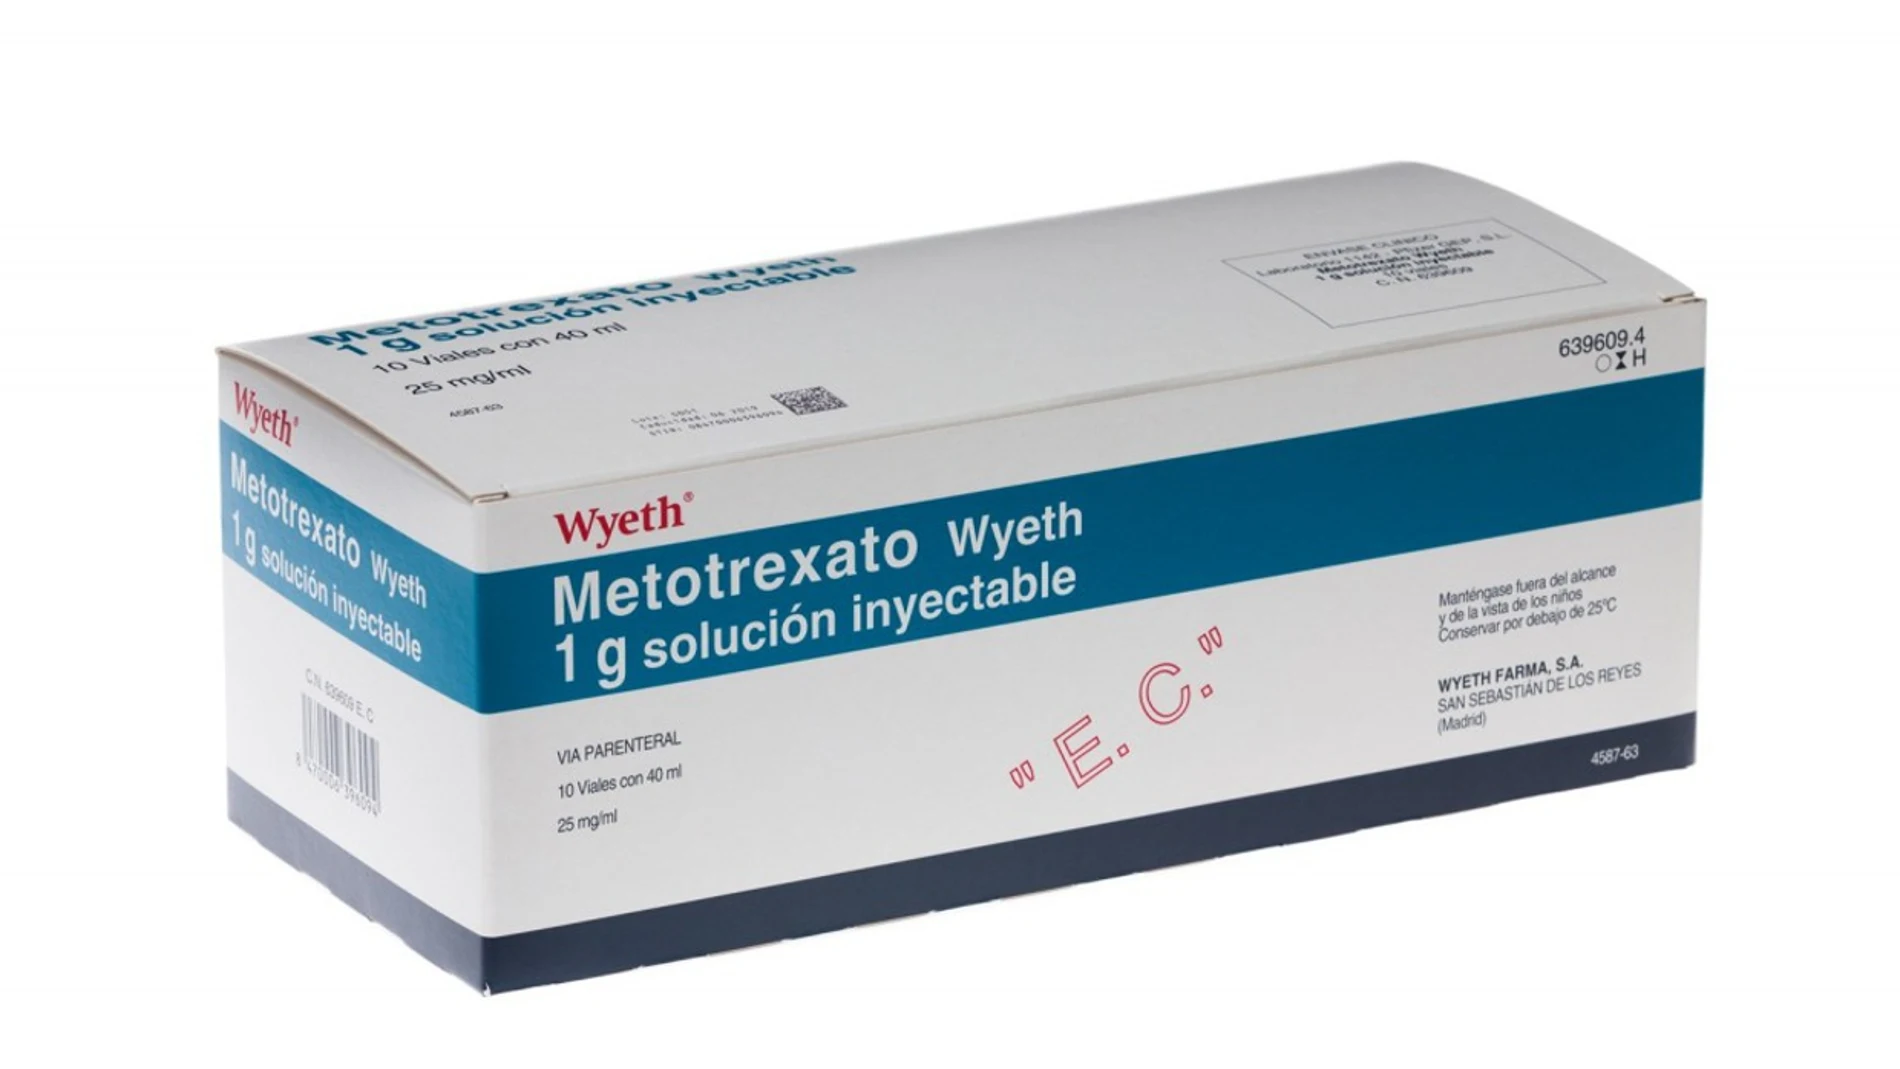 METOTREXATO WYETH 1 g SOLUCION INYECTABLE, 10 viales de 40 ml